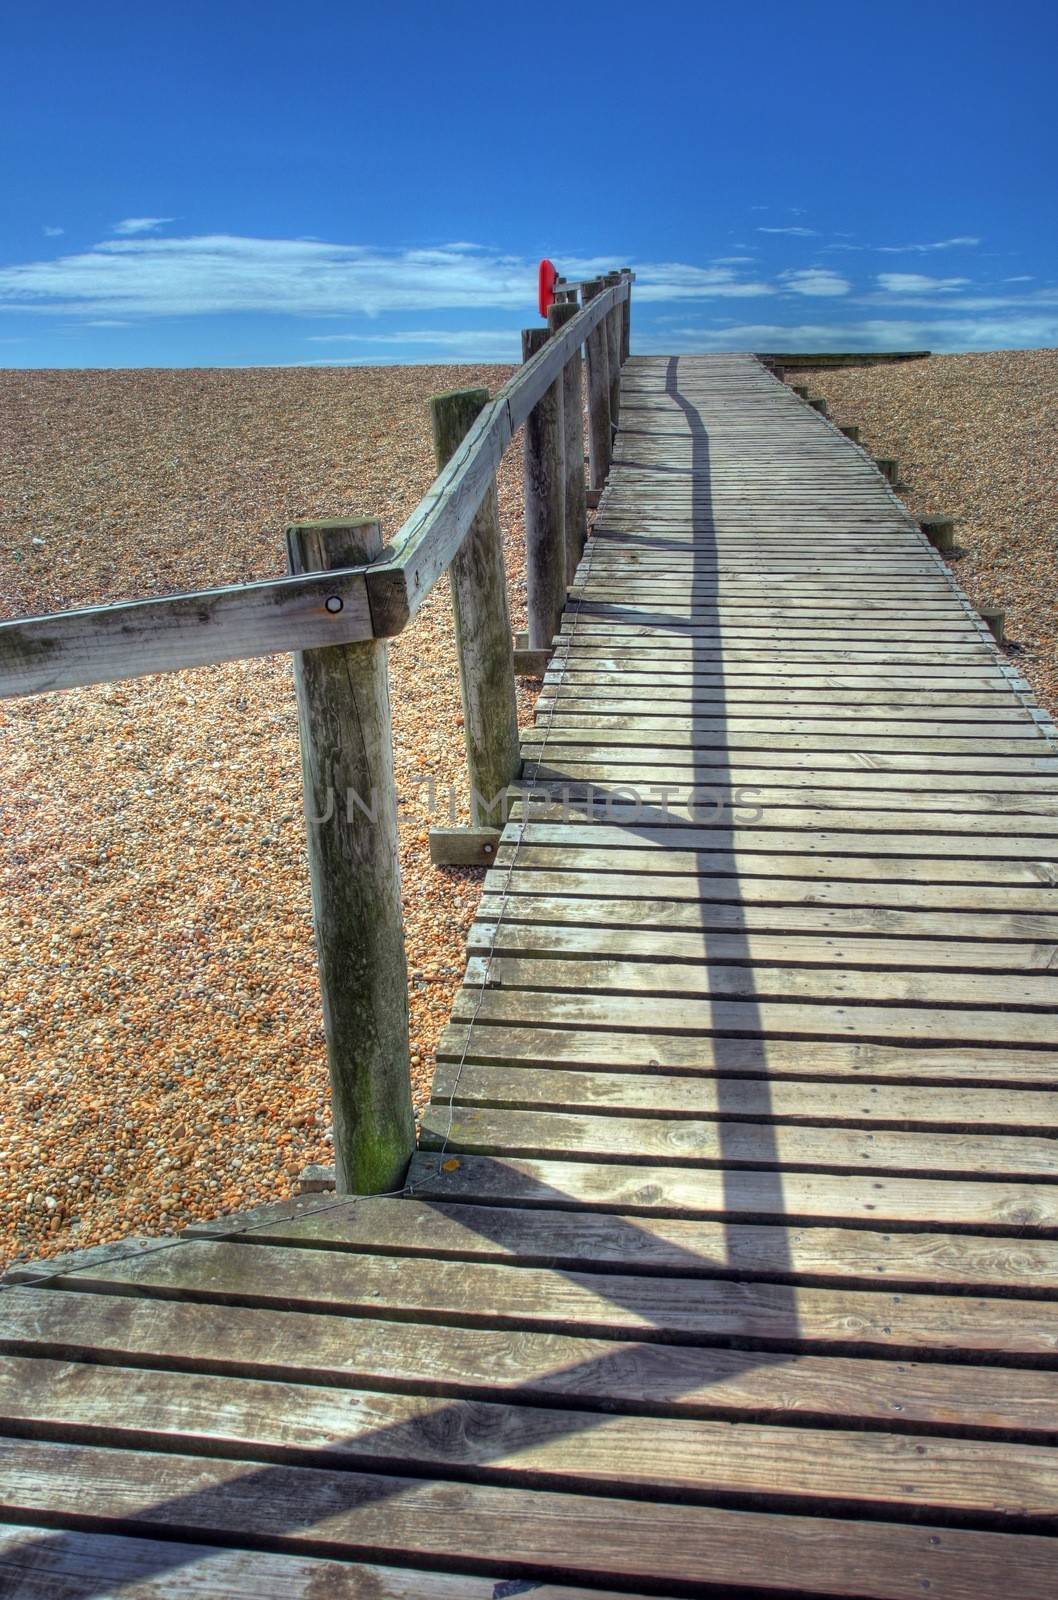 Seaside boardwalk by andrewroland